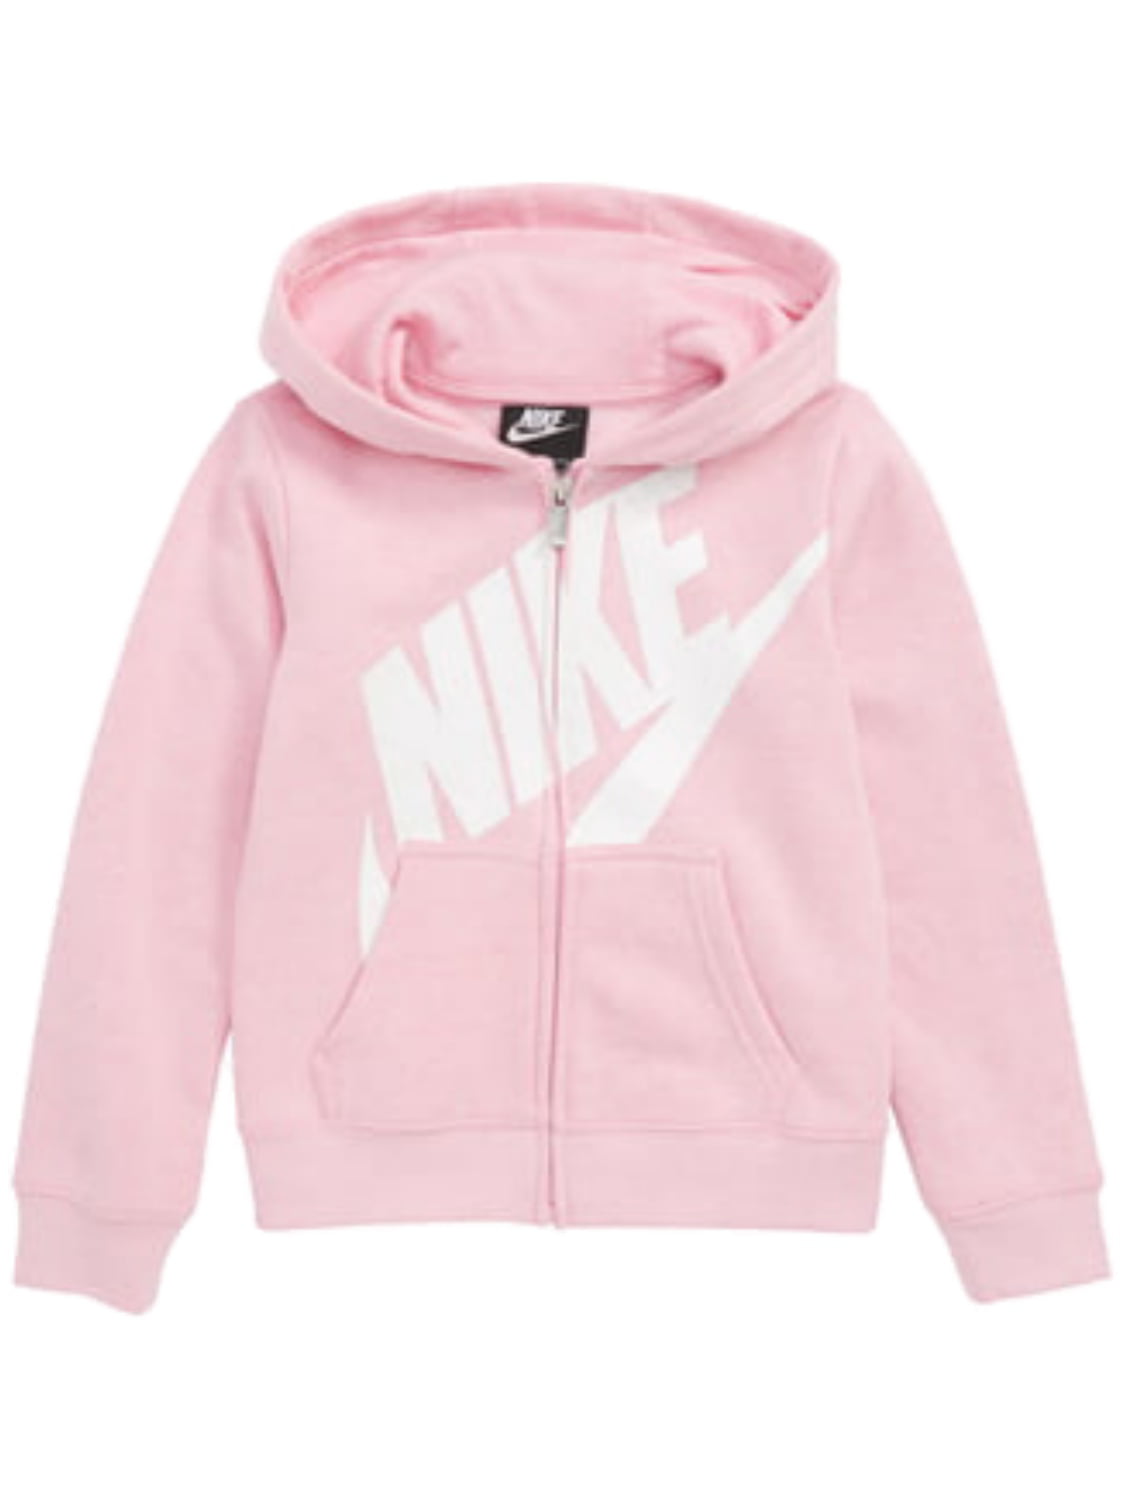 Nike Girls Light Pink & White Shimmer Swoosh Hoodie Zip Front ...